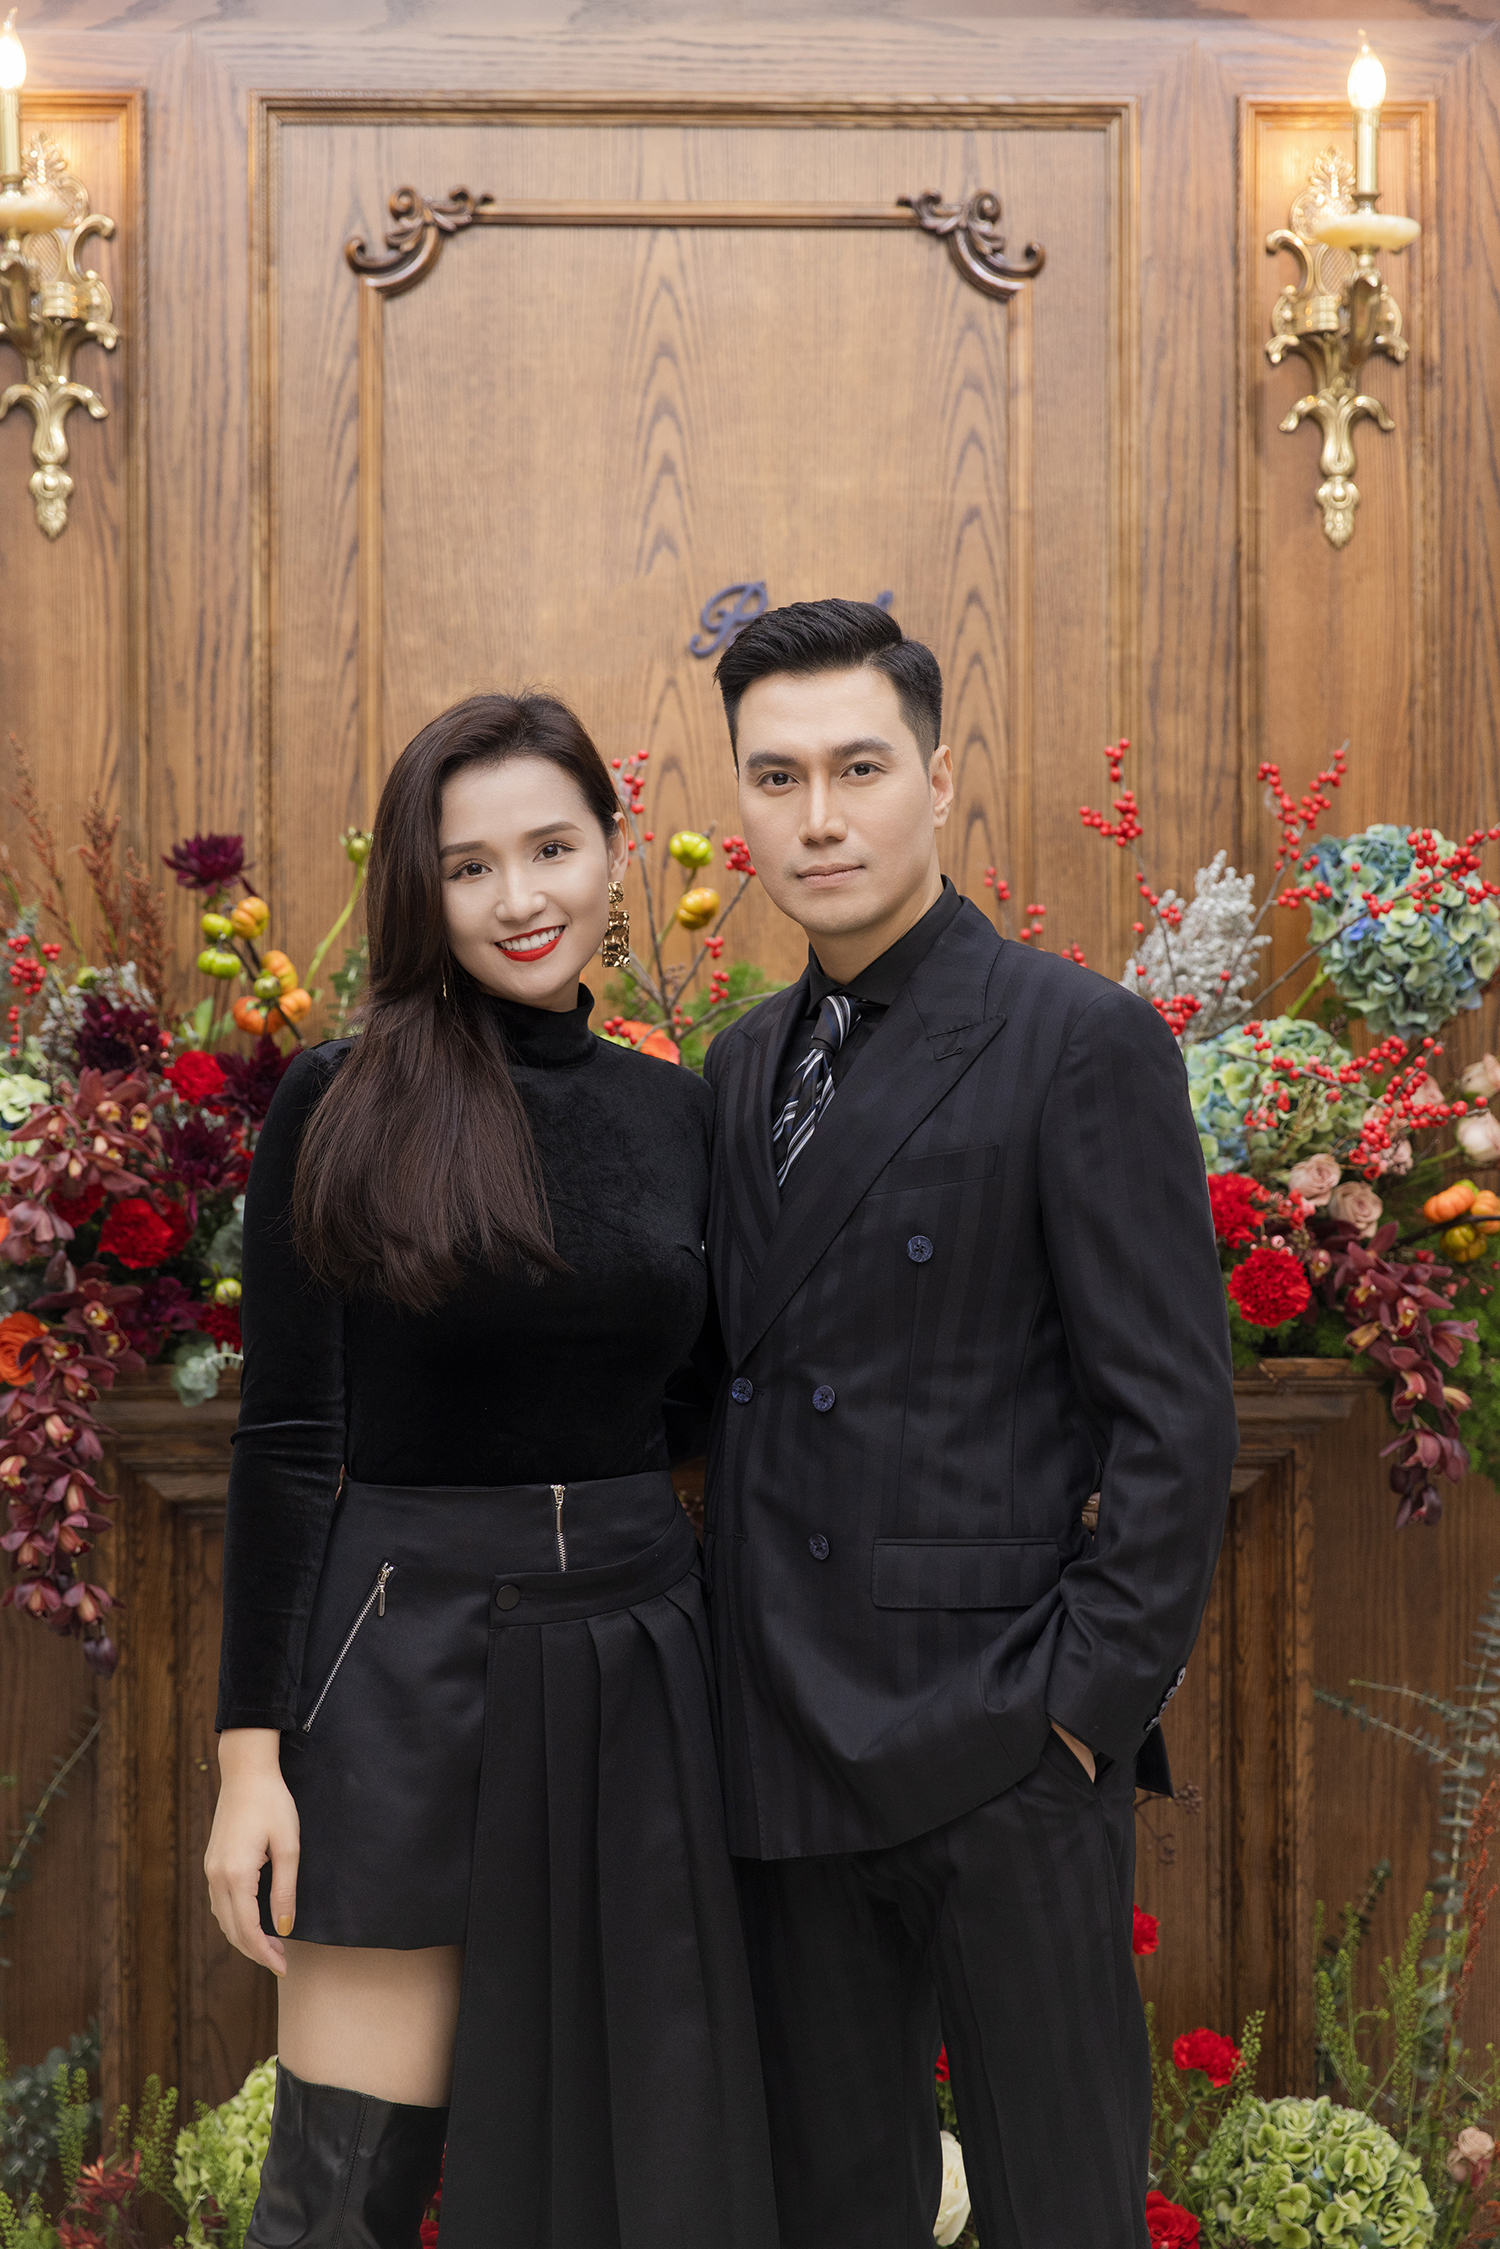 Việt Anh sánh vai cùng người bạn thân là nữ diễn viên Lã Thanh Huyền. Cô diện trang phục kín đáo tông màu đen, khoe nhan sắc ngày càng xinh đẹp, mặn mà. Ảnh: Nhân vật cung cấp